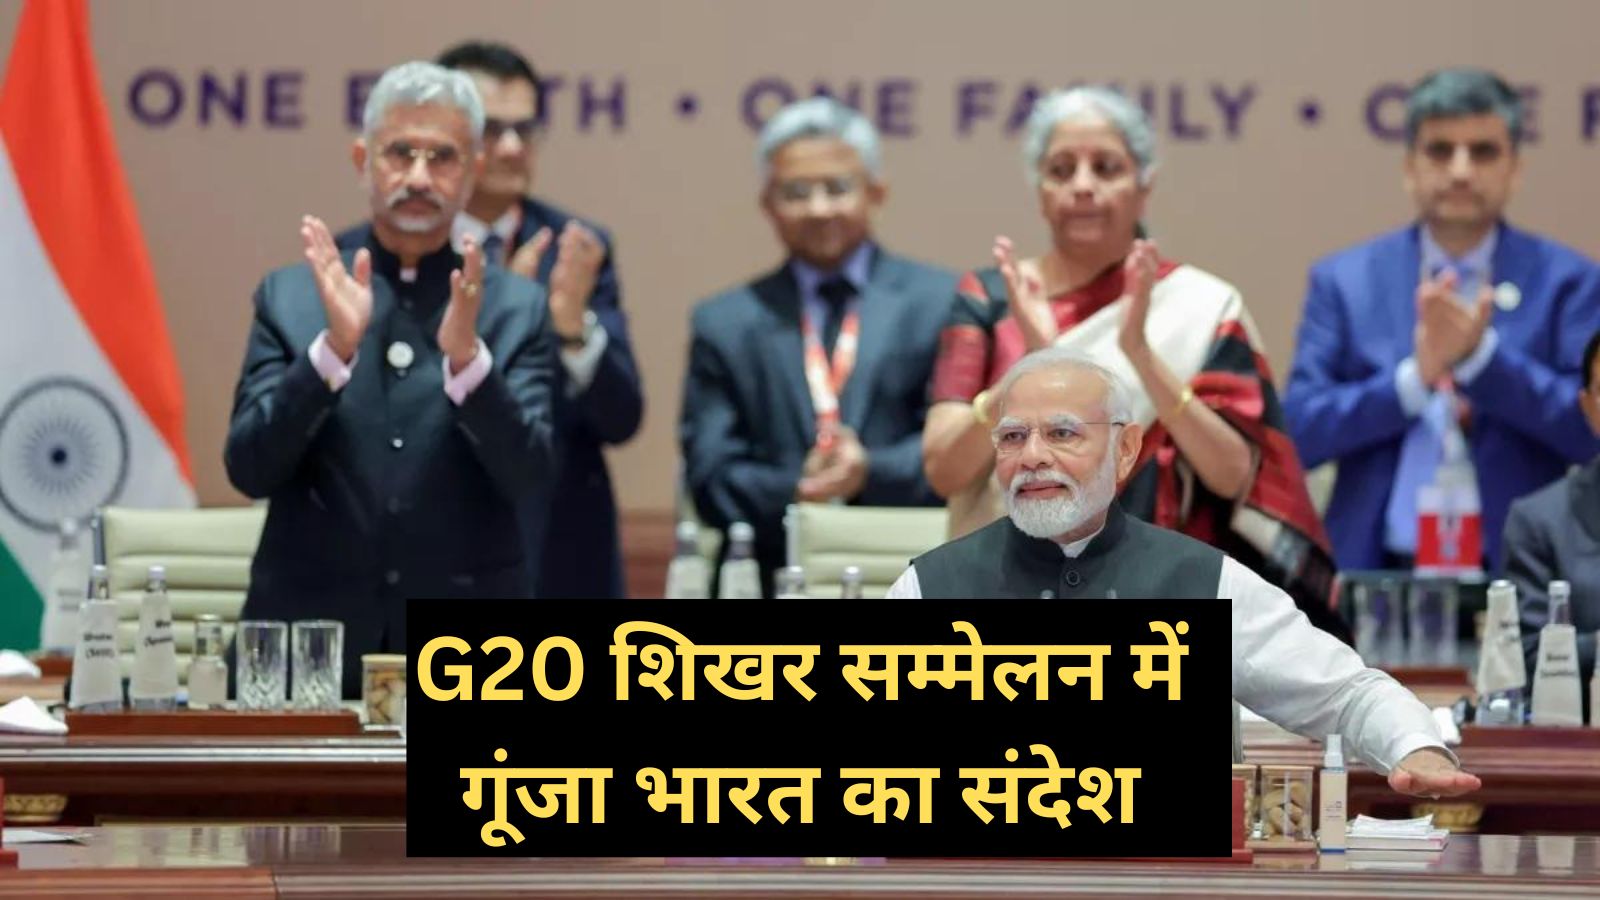 G20 Summit :G20 शिखर सम्मेलन में गूंजा भारत का संदेश, IMF की डिप्टी एमडी गीता गोपीनाथ ने दी पीएम मोदी को बधाई